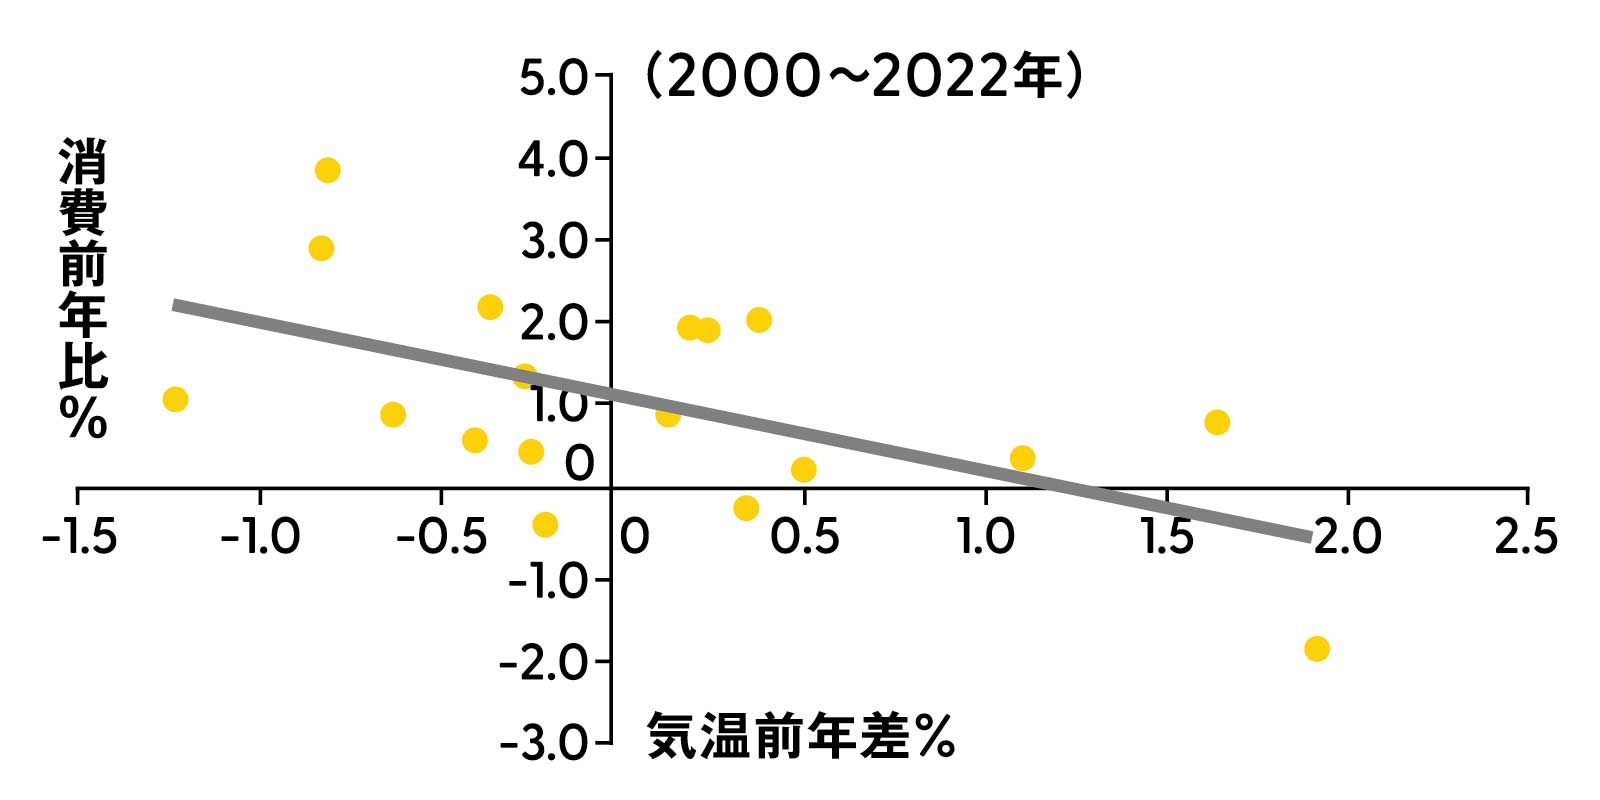 花粉症 1-3月期家計消費と前年7-9月期気温の関係 グラフ